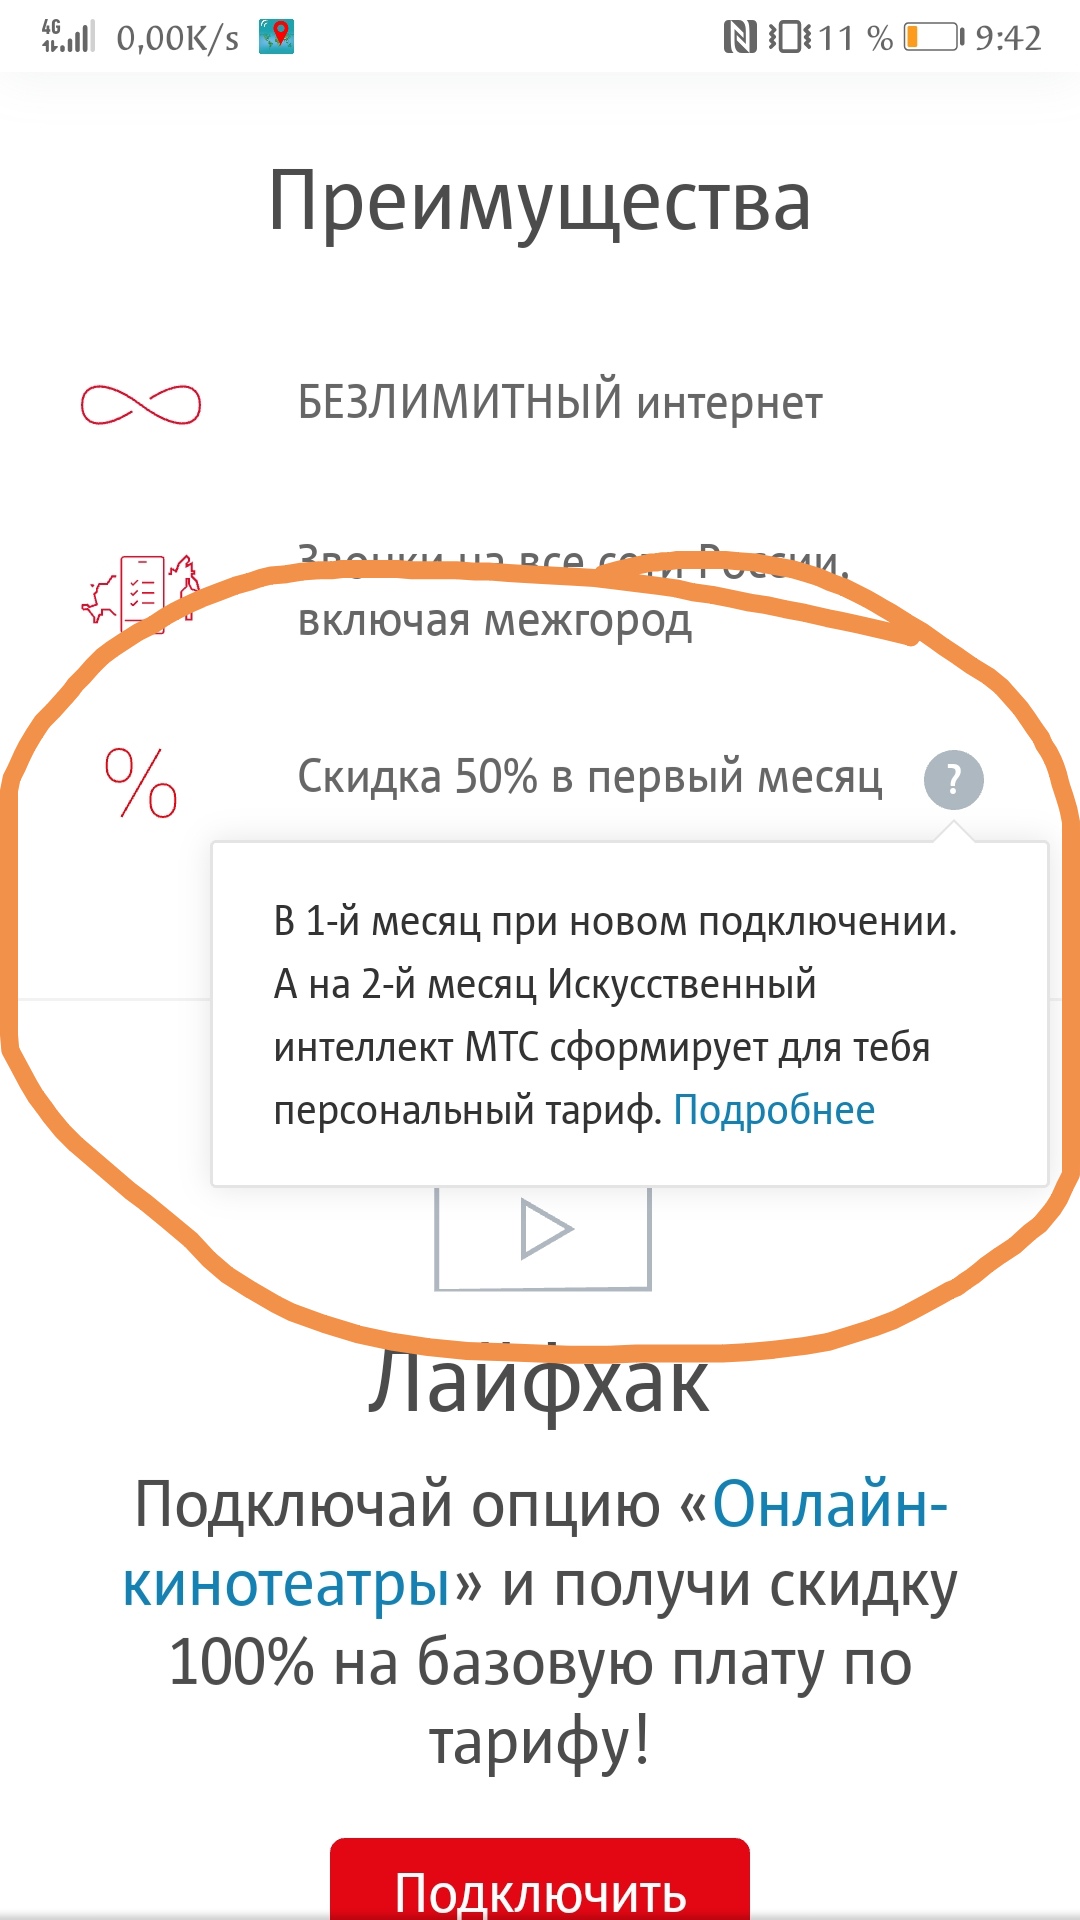 Саяногорск Инфо - screenshot_20200104_094309.jpg, Скачано: 444